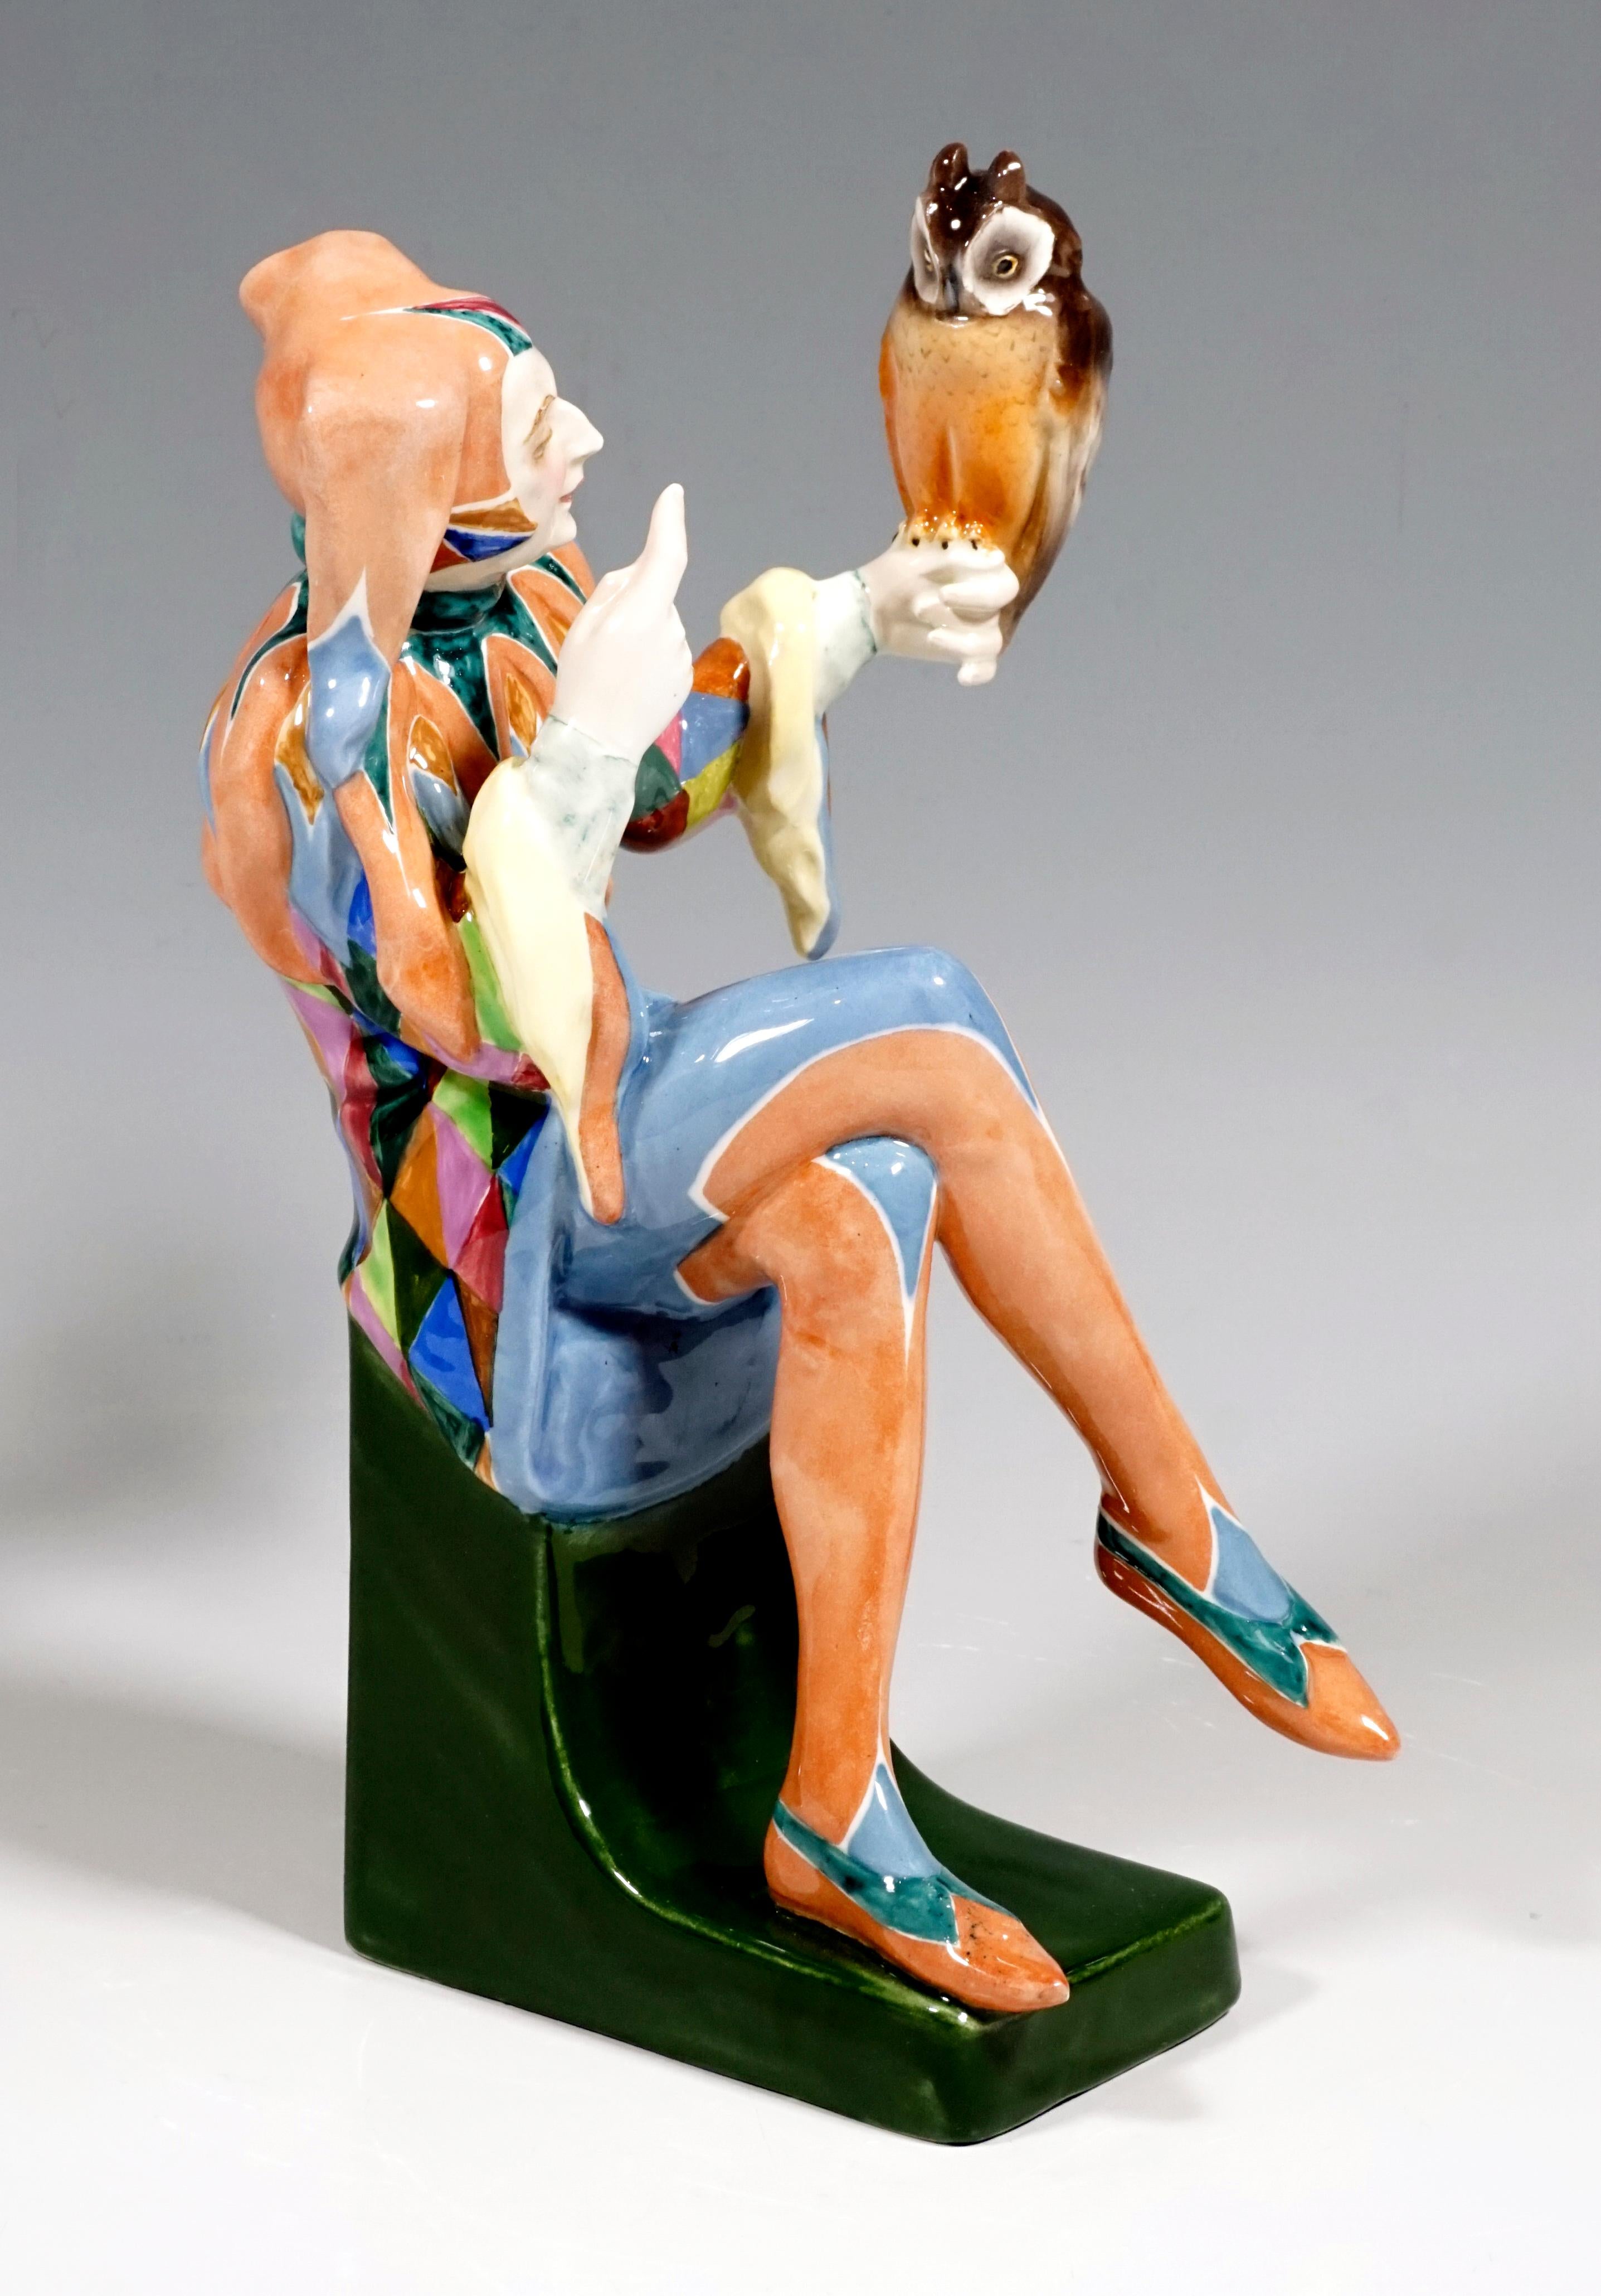 Exceptionnelle figurine Art Déco Goldscheider de Josef Lorenzl
Le jeune homme habillé en bouffon avec un bonnet de fou repose sur un socle vert. Un hibou est posé sur sa main gauche tendue. Avec l'index droit levé, le fou semble réguler l'oiseau.